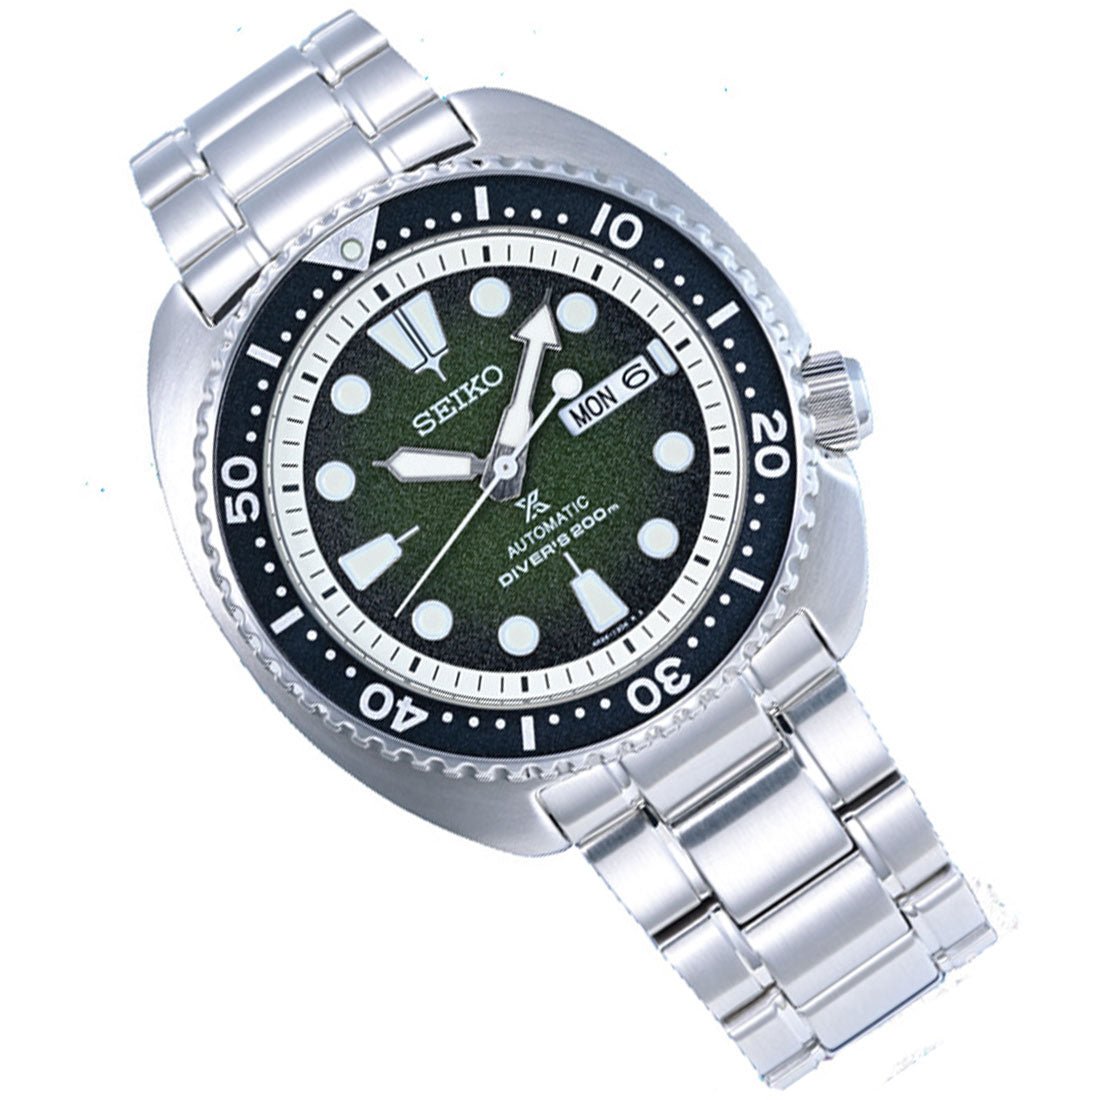 Seiko Sea Urchin Green Prospex SRPJ51K1 SRPJ51 SRPJ51K Limited Edition Diving Watch -Seiko